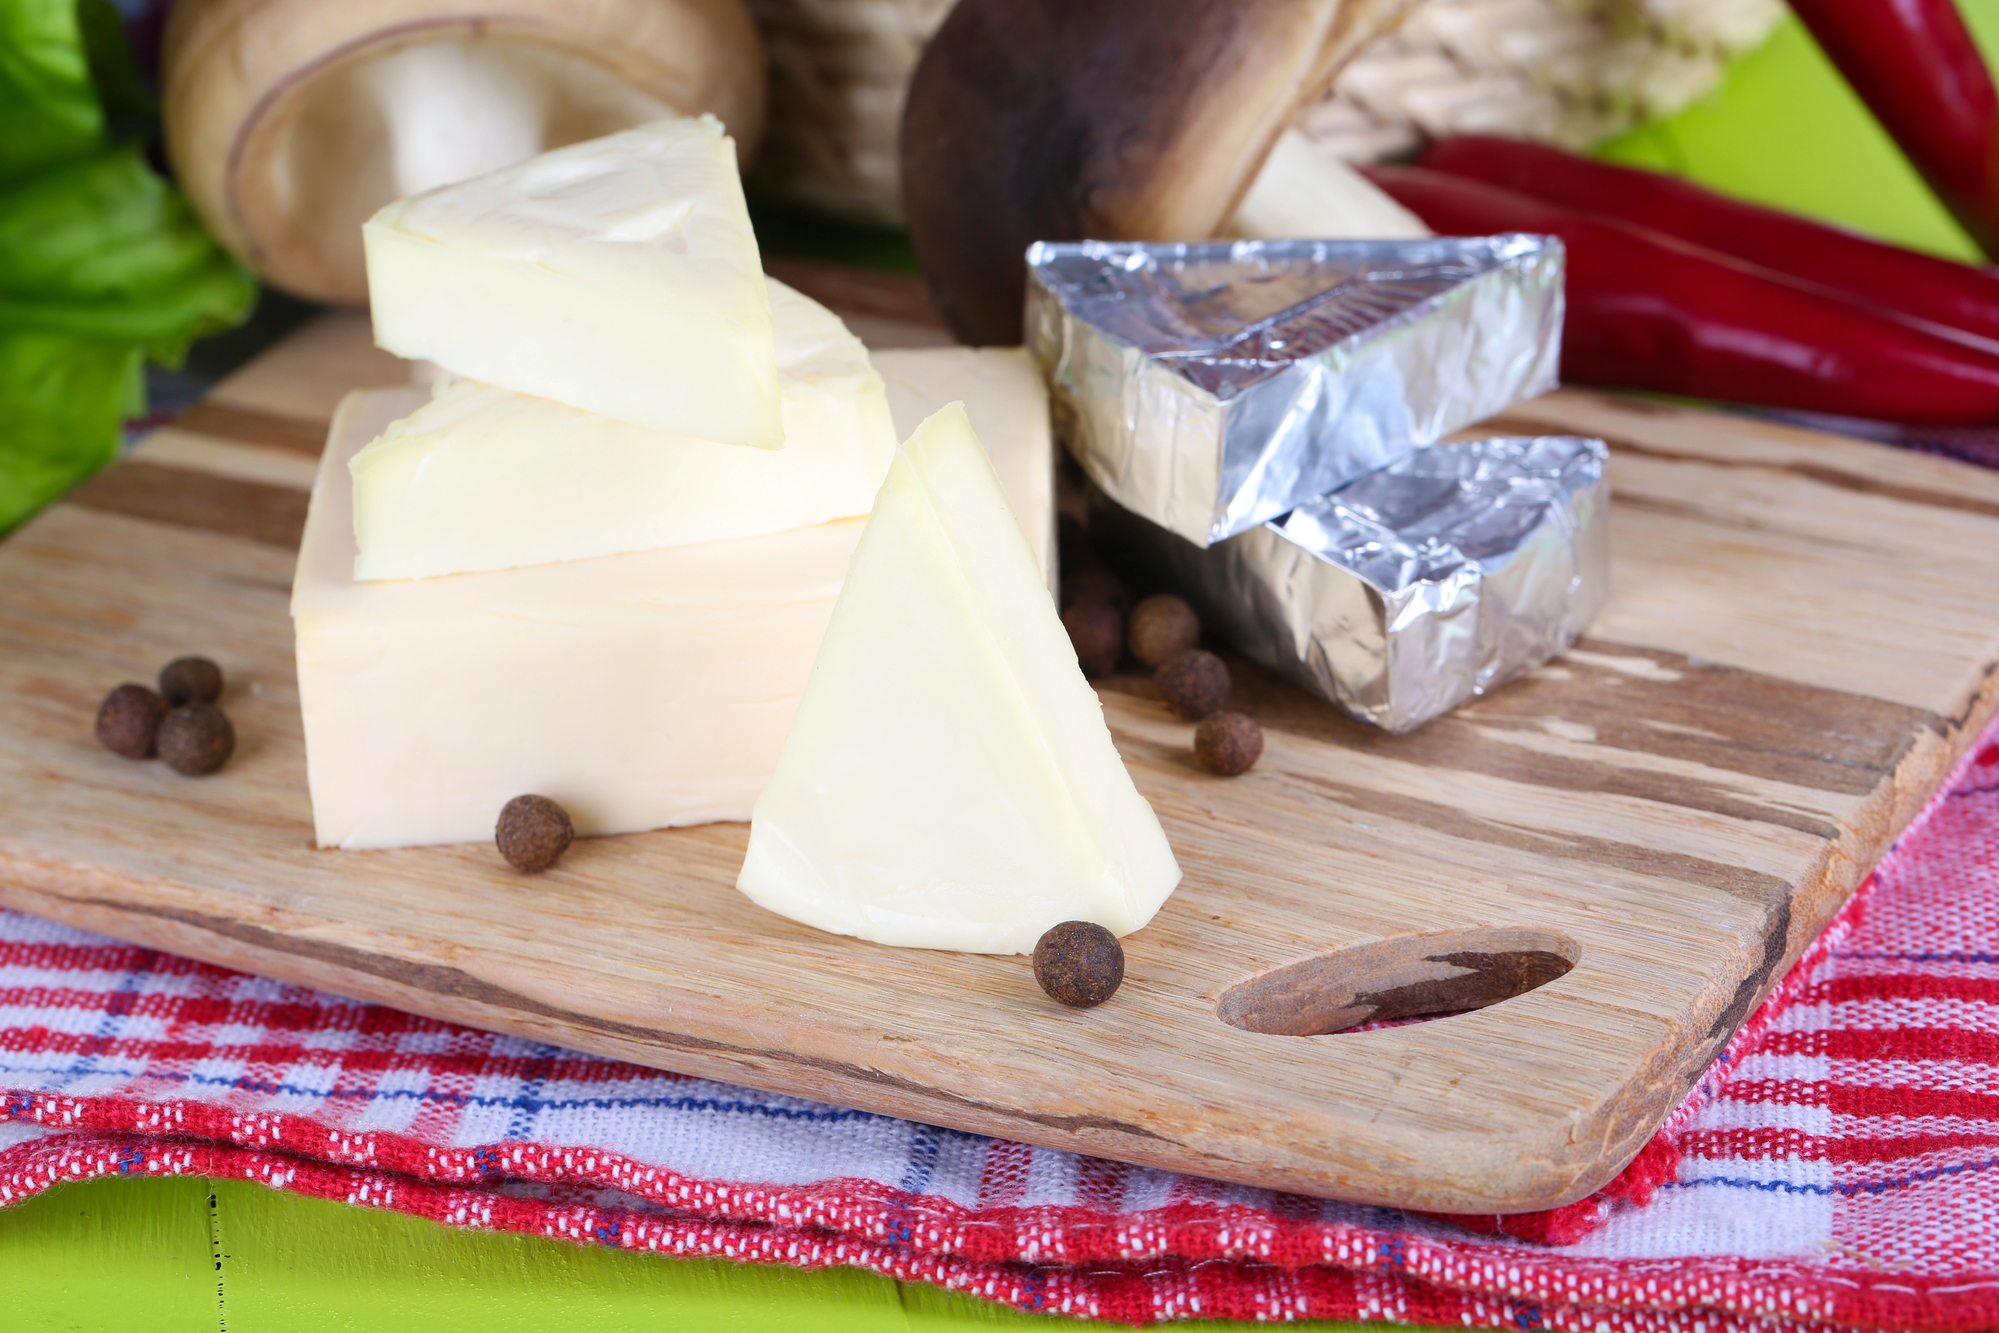 Вкусный и безопасный: как выбрать качественный плавленый сыр